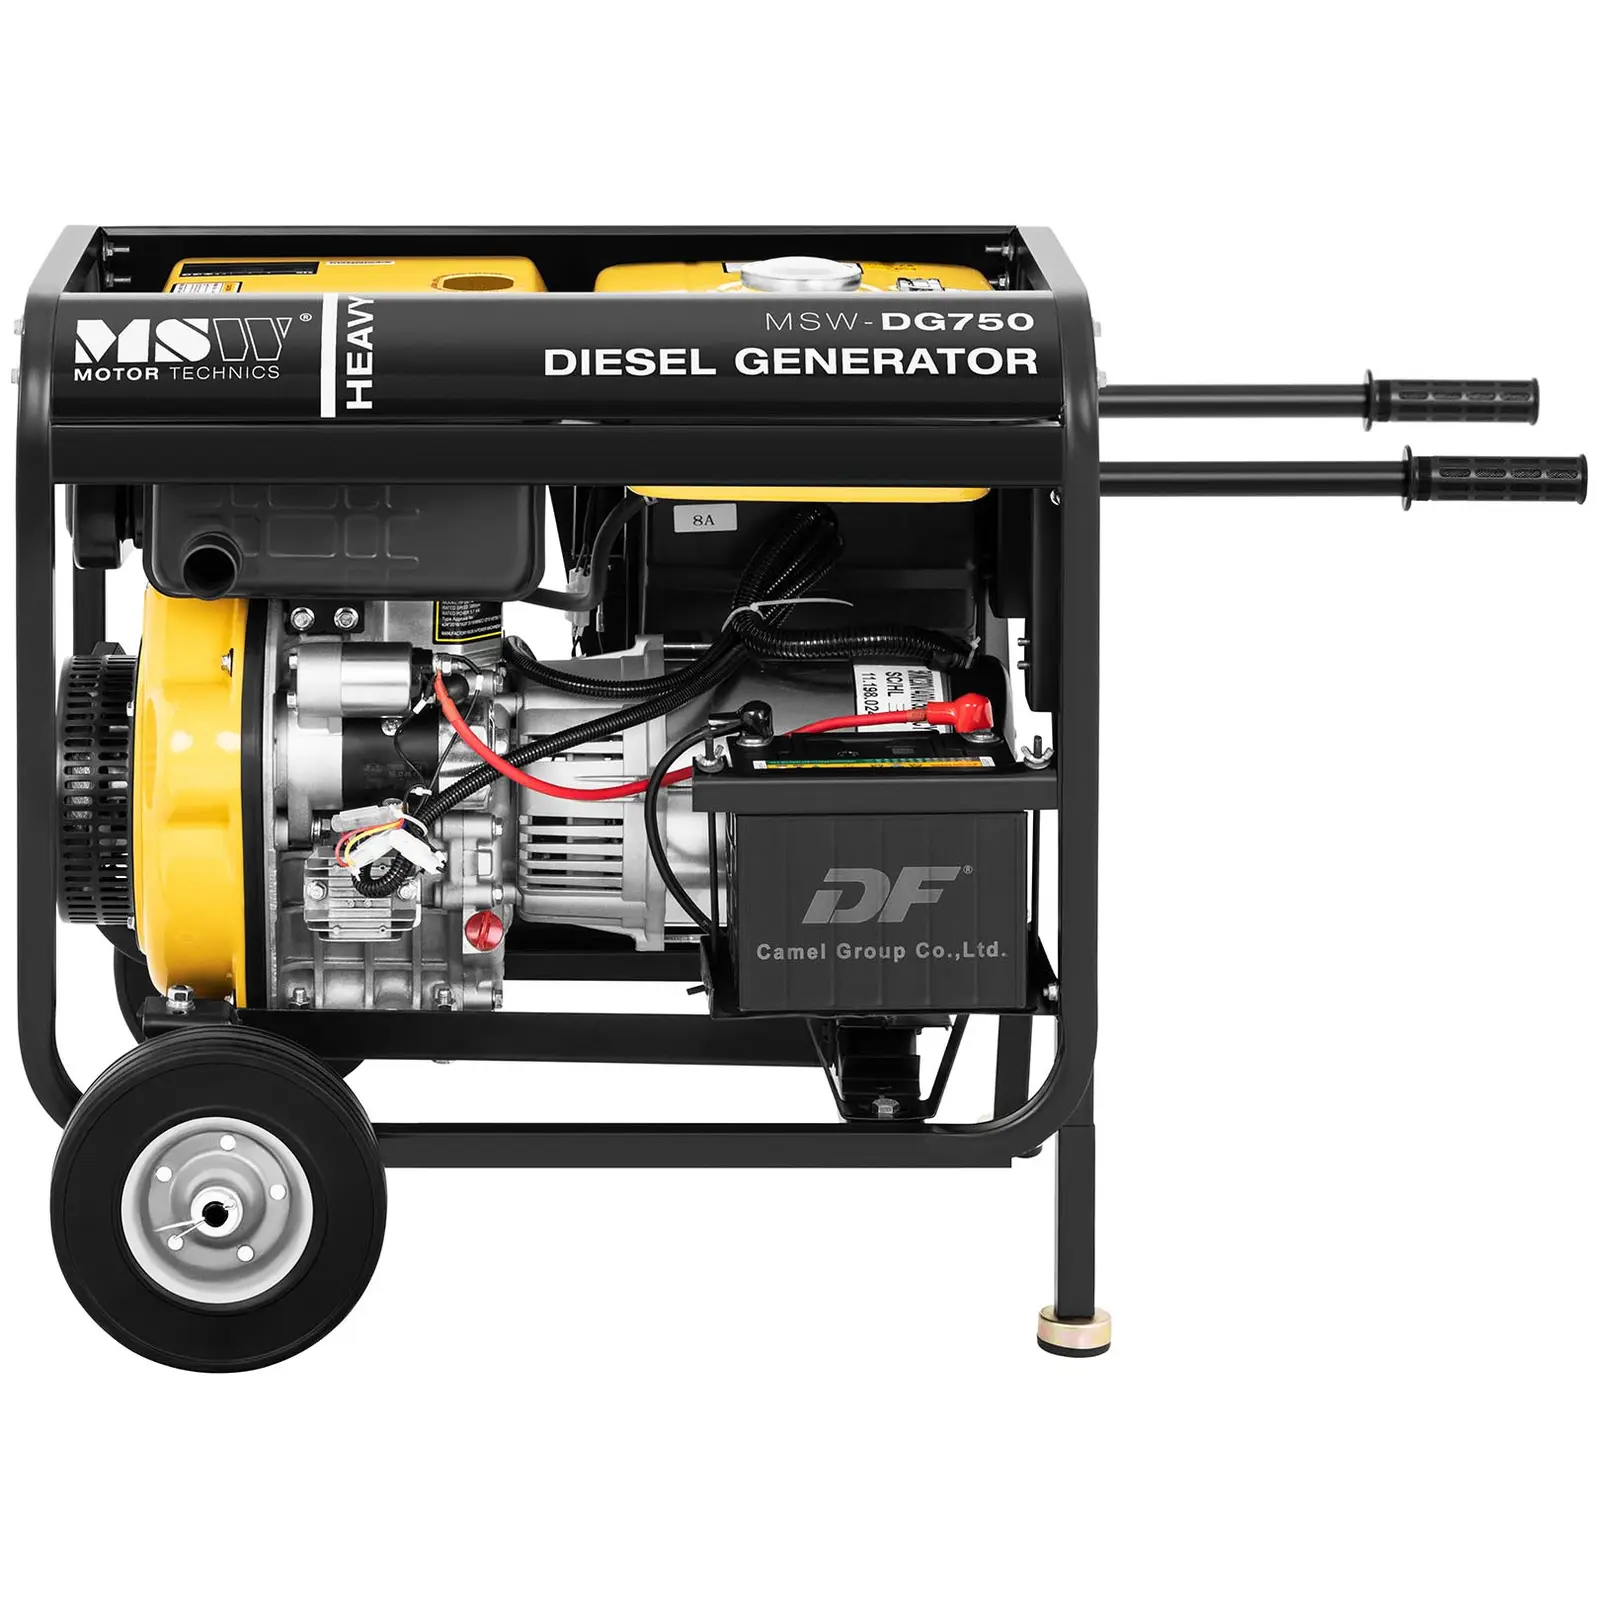 Dieselgenerator - 4400 W - 12,5 L - 230/400 V - Mobil